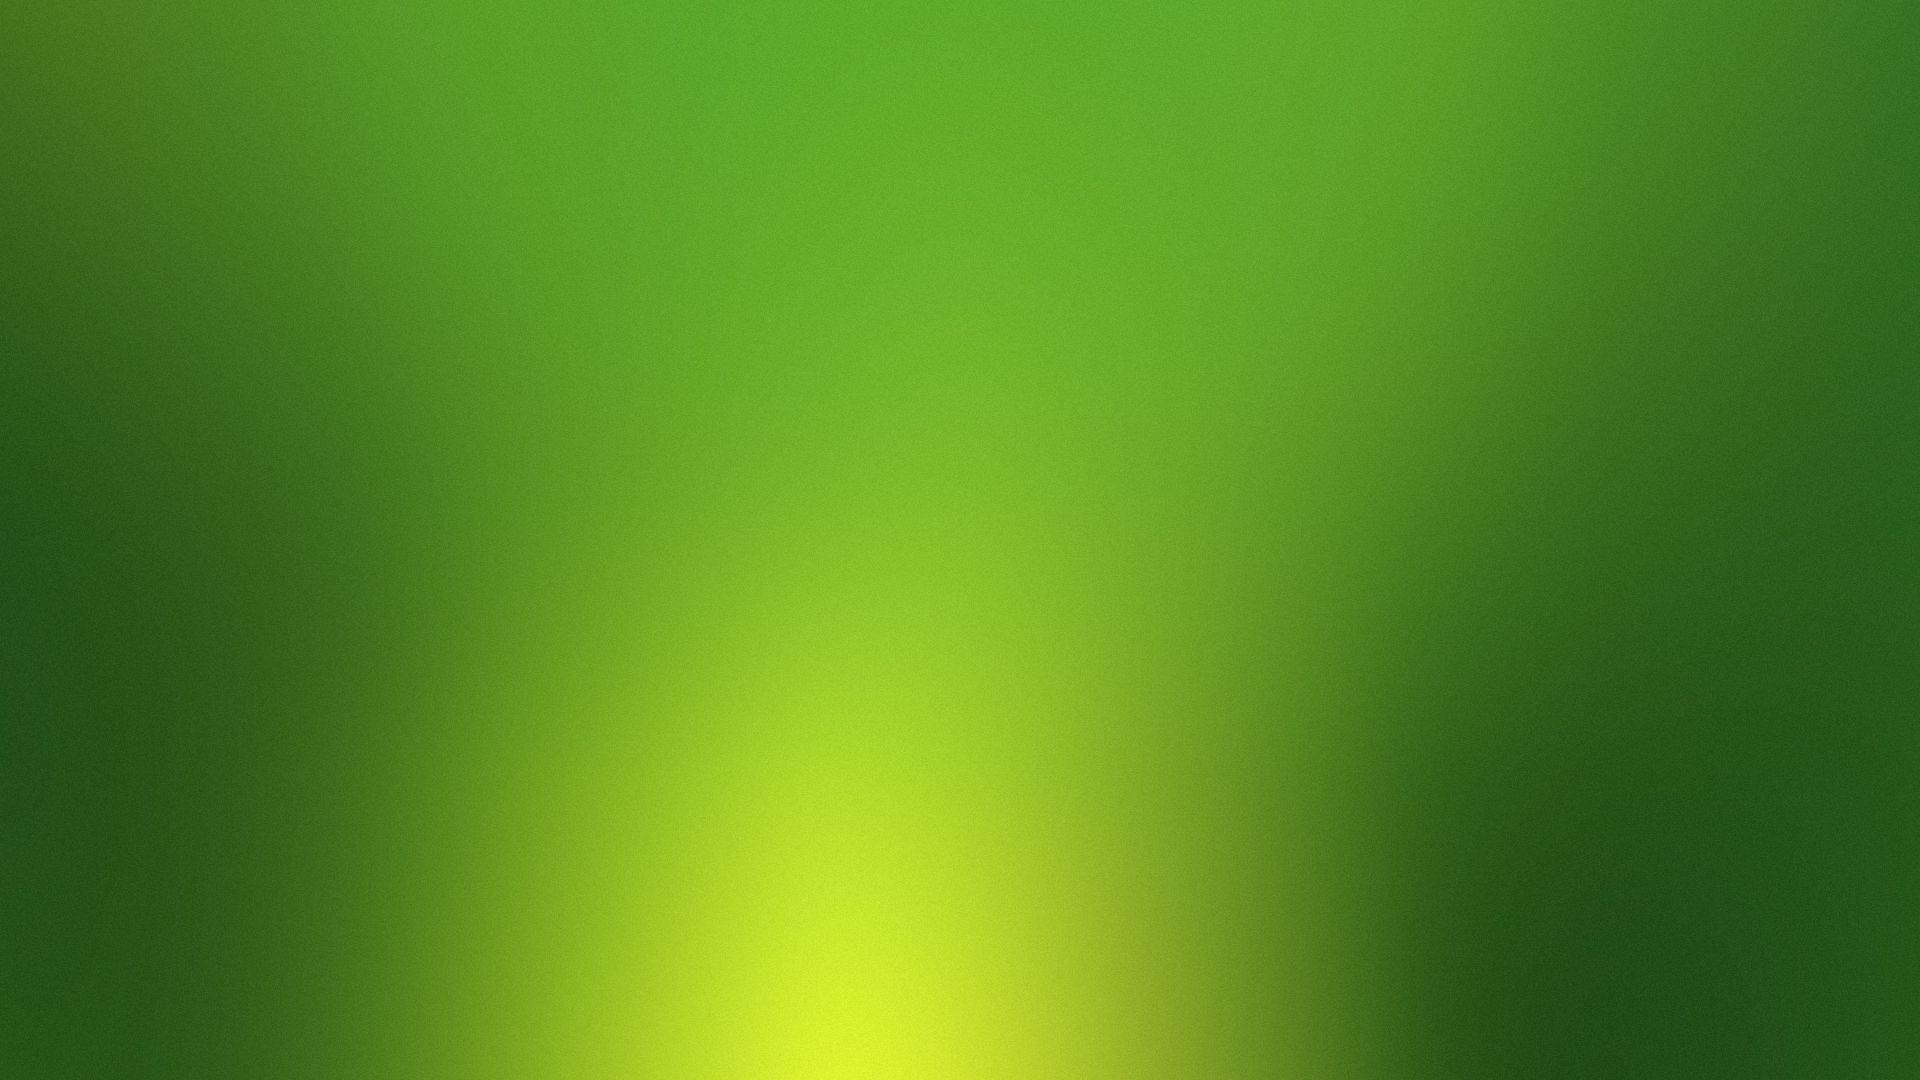 1920x1080 Hình nền màu xanh lá cây đơn giản